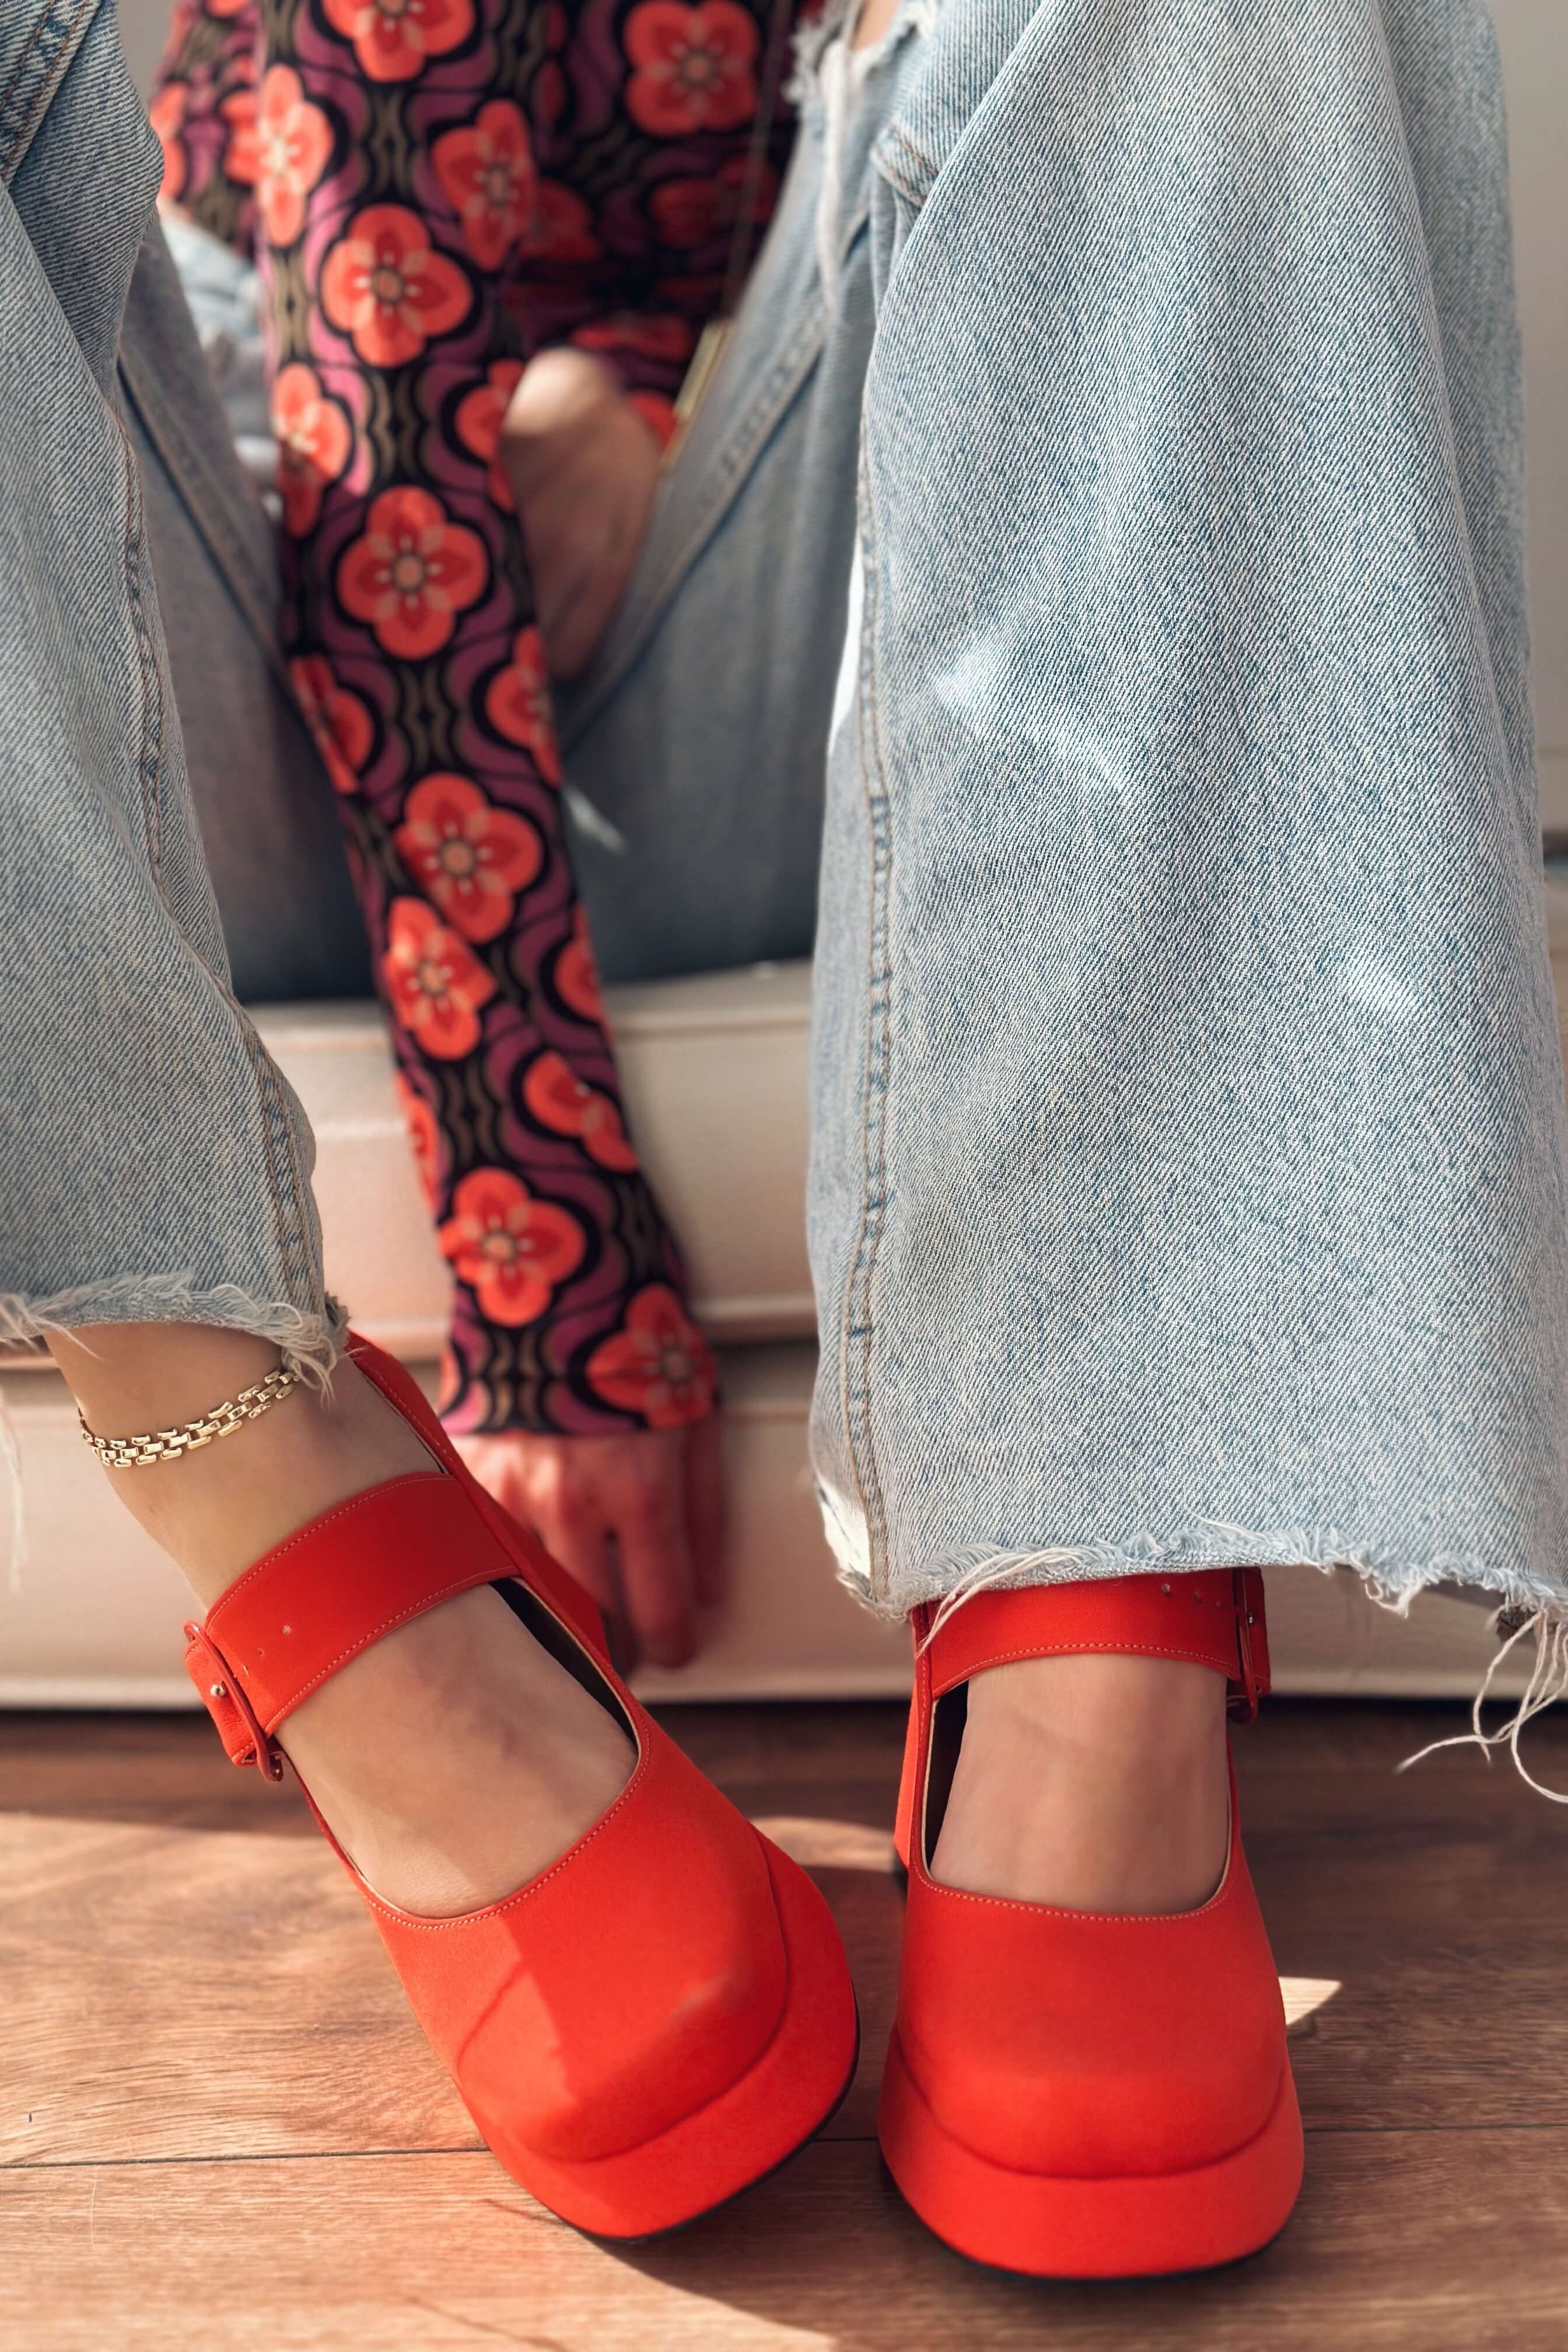 Alpons Satin Women's Platform Heels Shoe Orange